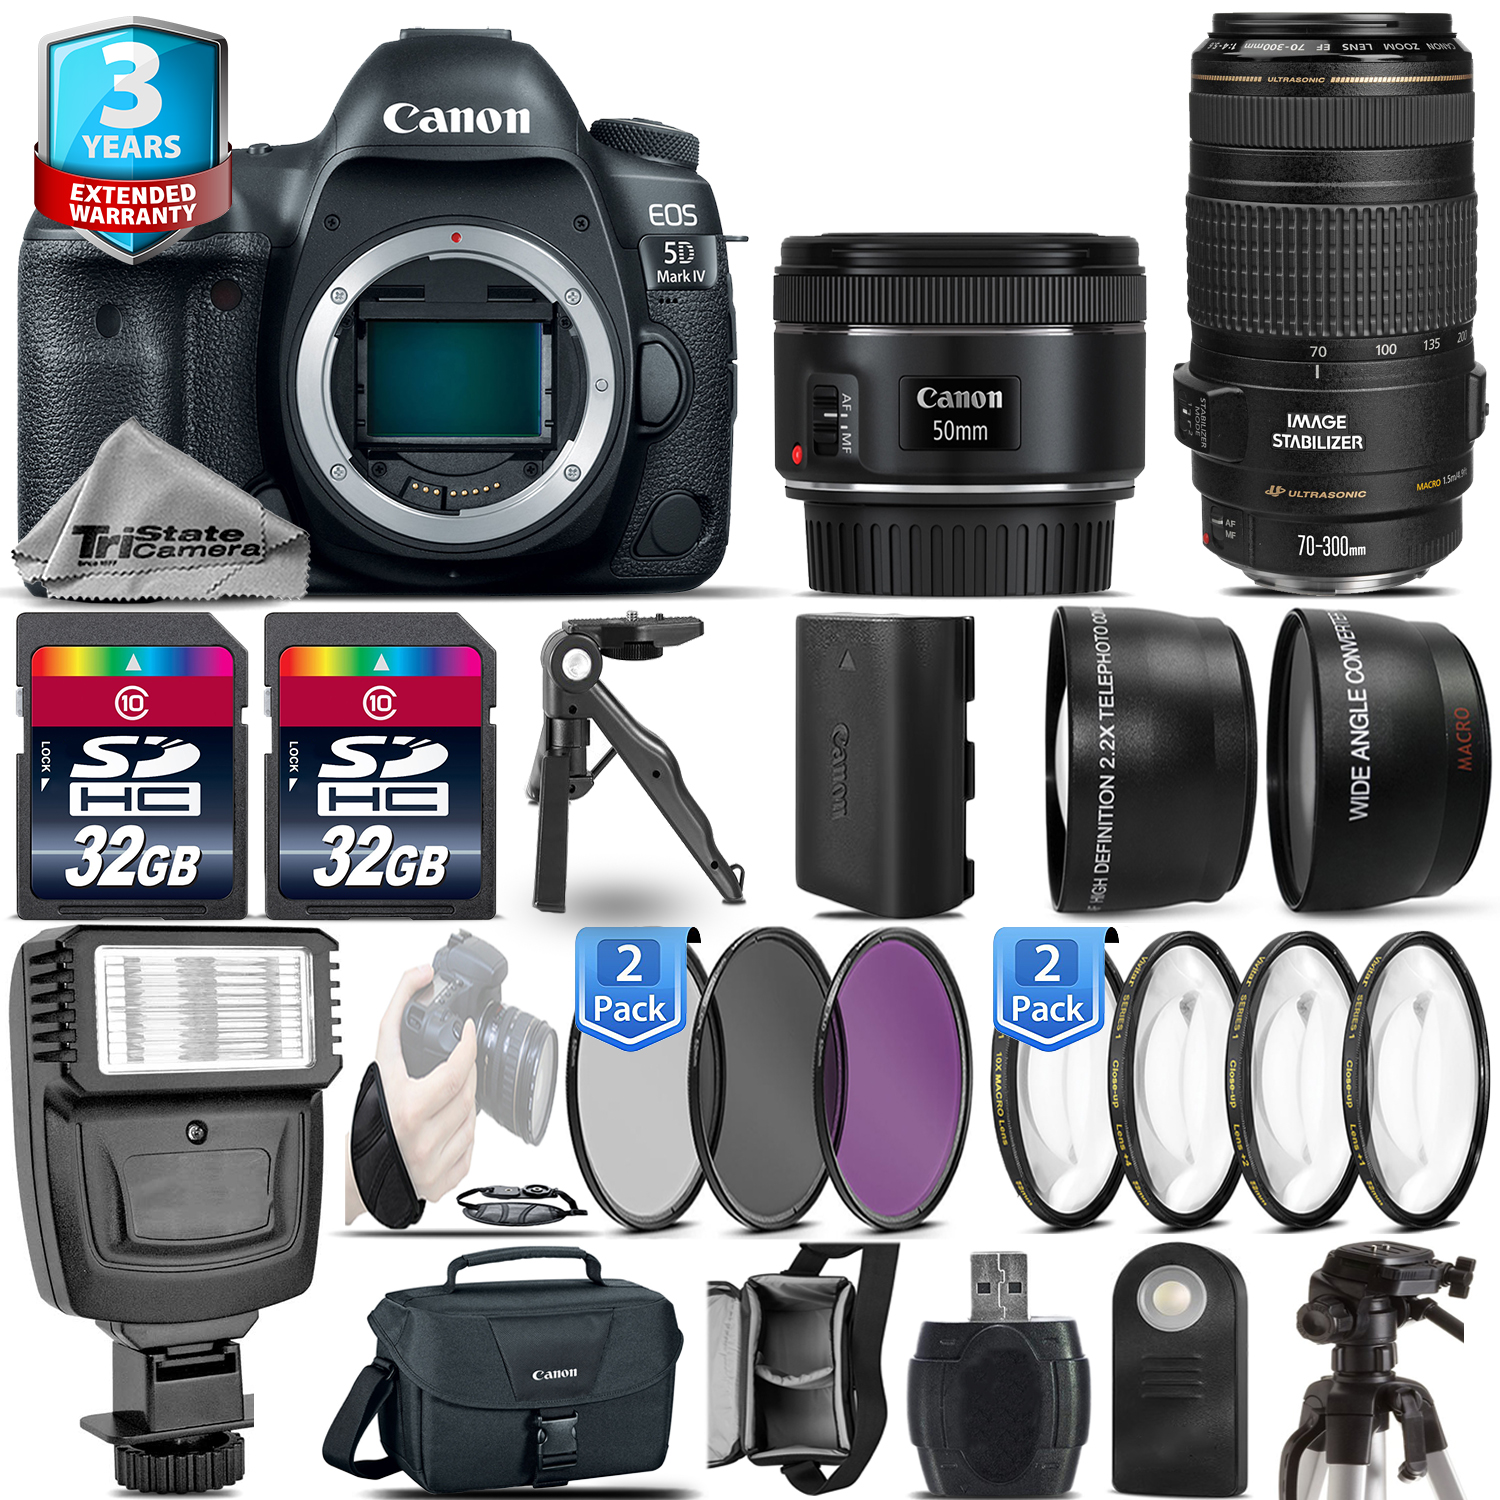 EOS 5D Mark IV Camera + 50mm 1.8 STM + 70-300mm USM + Flash + 2yr Warranty *FREE SHIPPING*